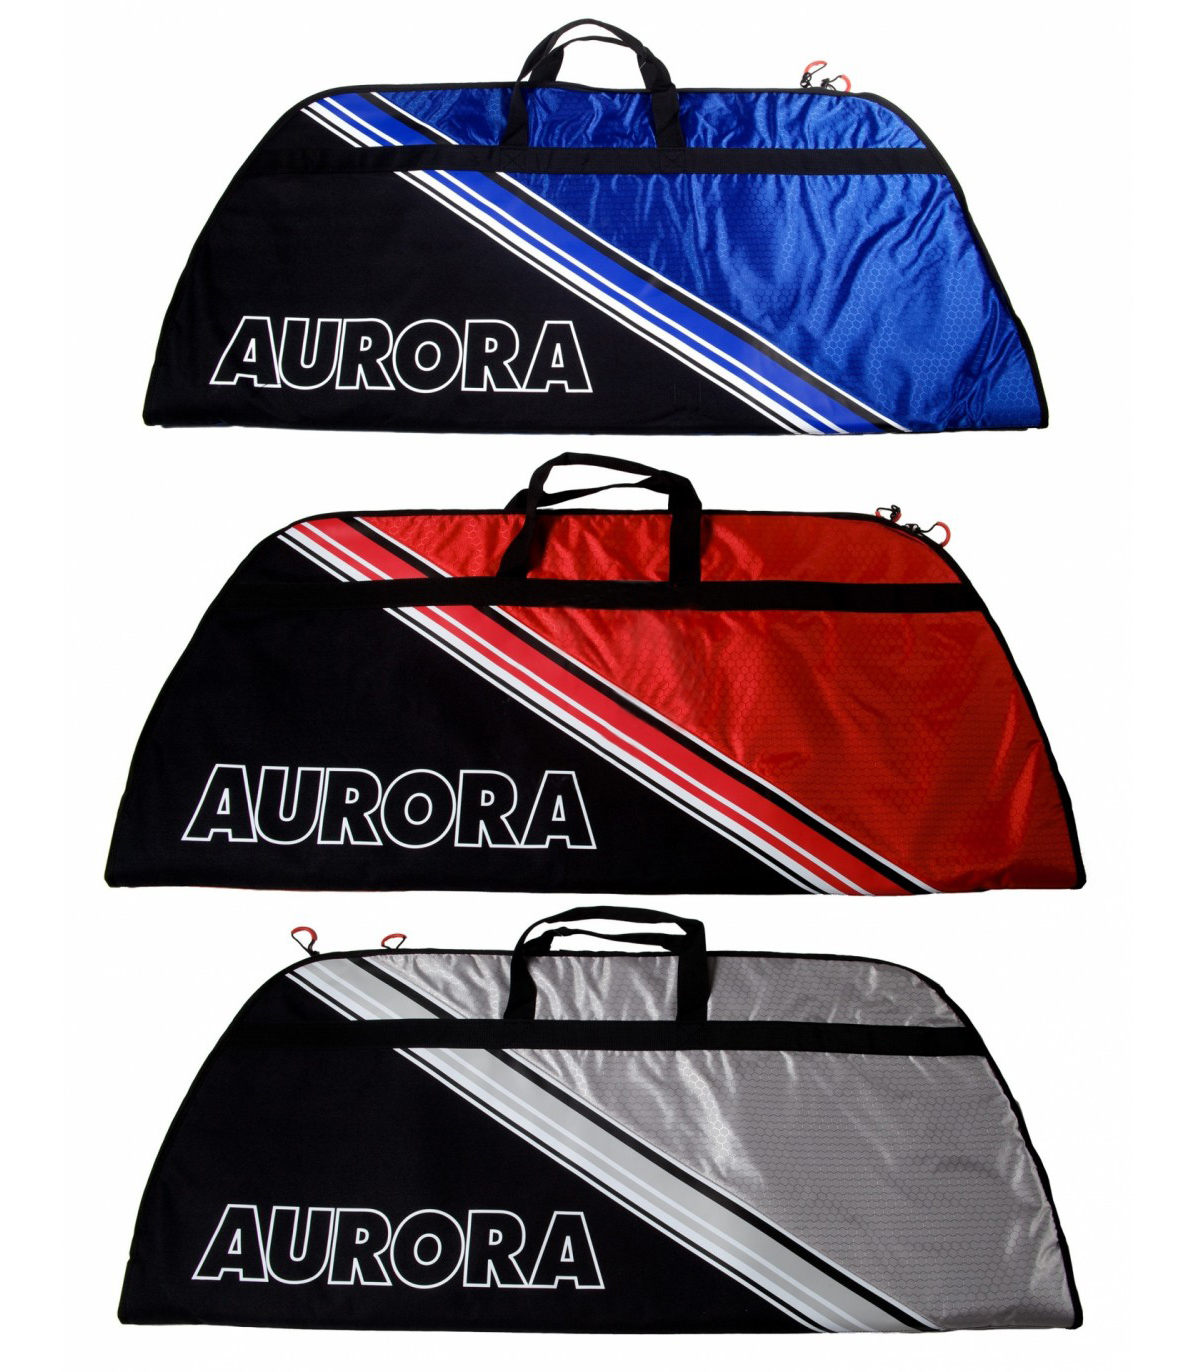 AURORA COMPOUND BAG NEXT